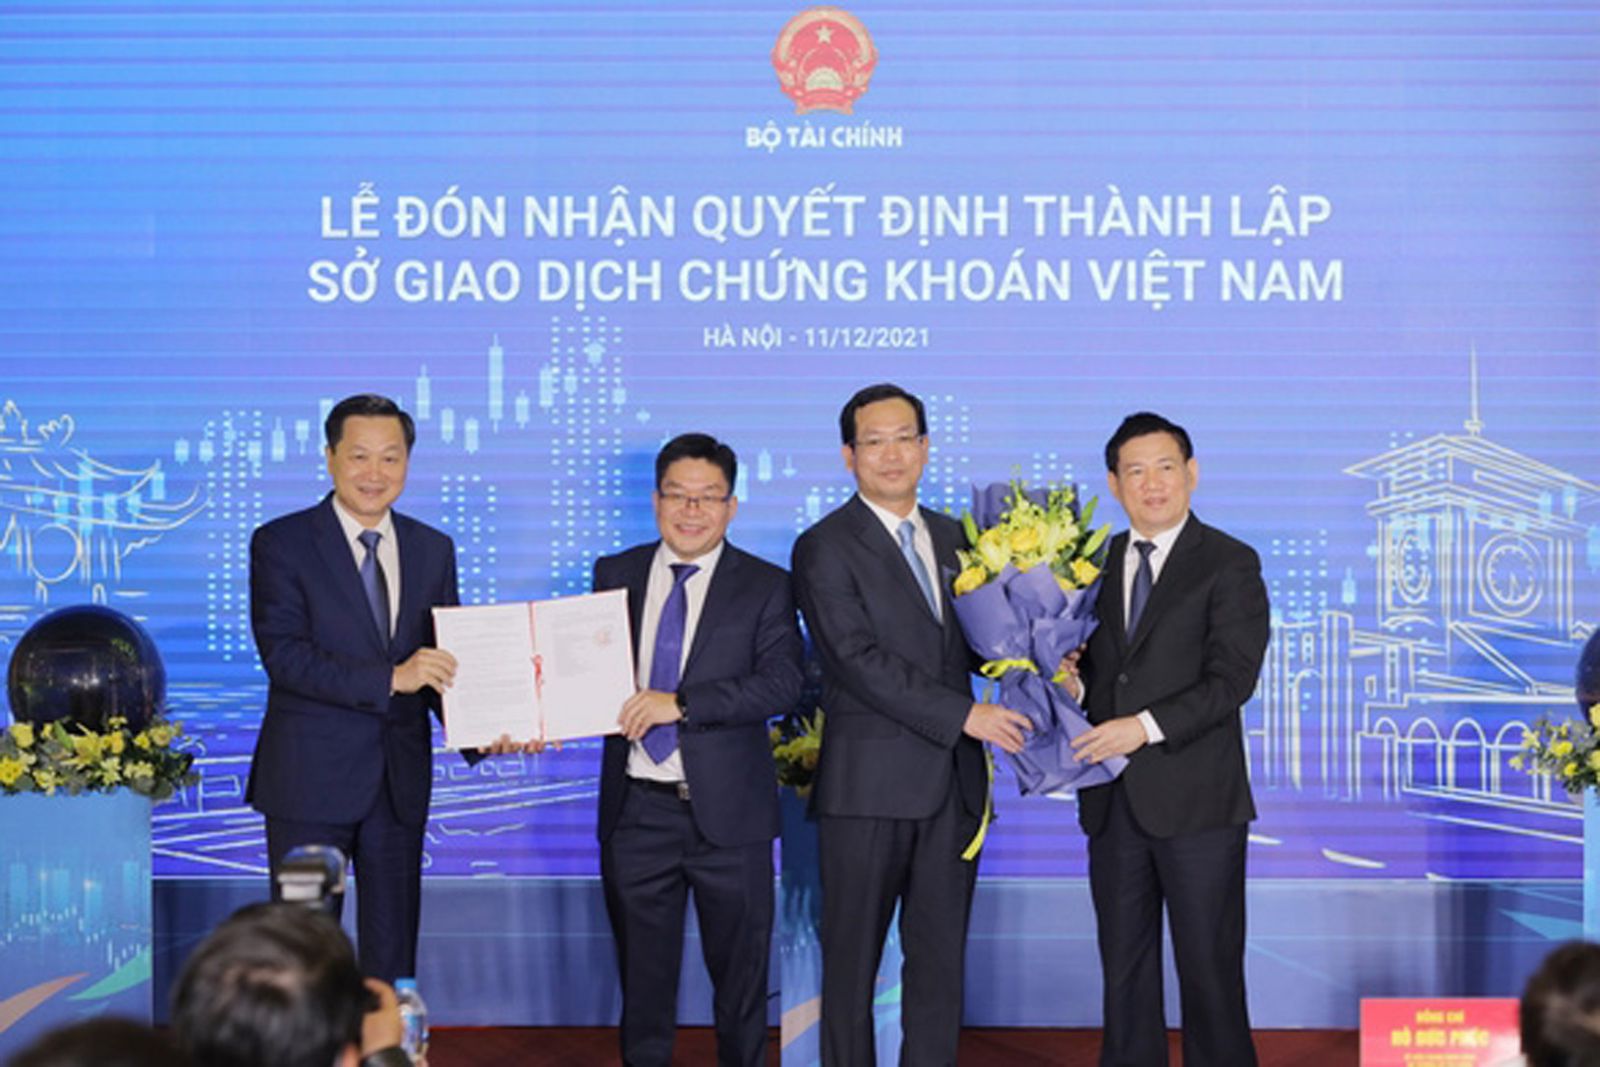  Sở Giao dịch chứng khoán Việt Nam đã chính thức được thành lập.